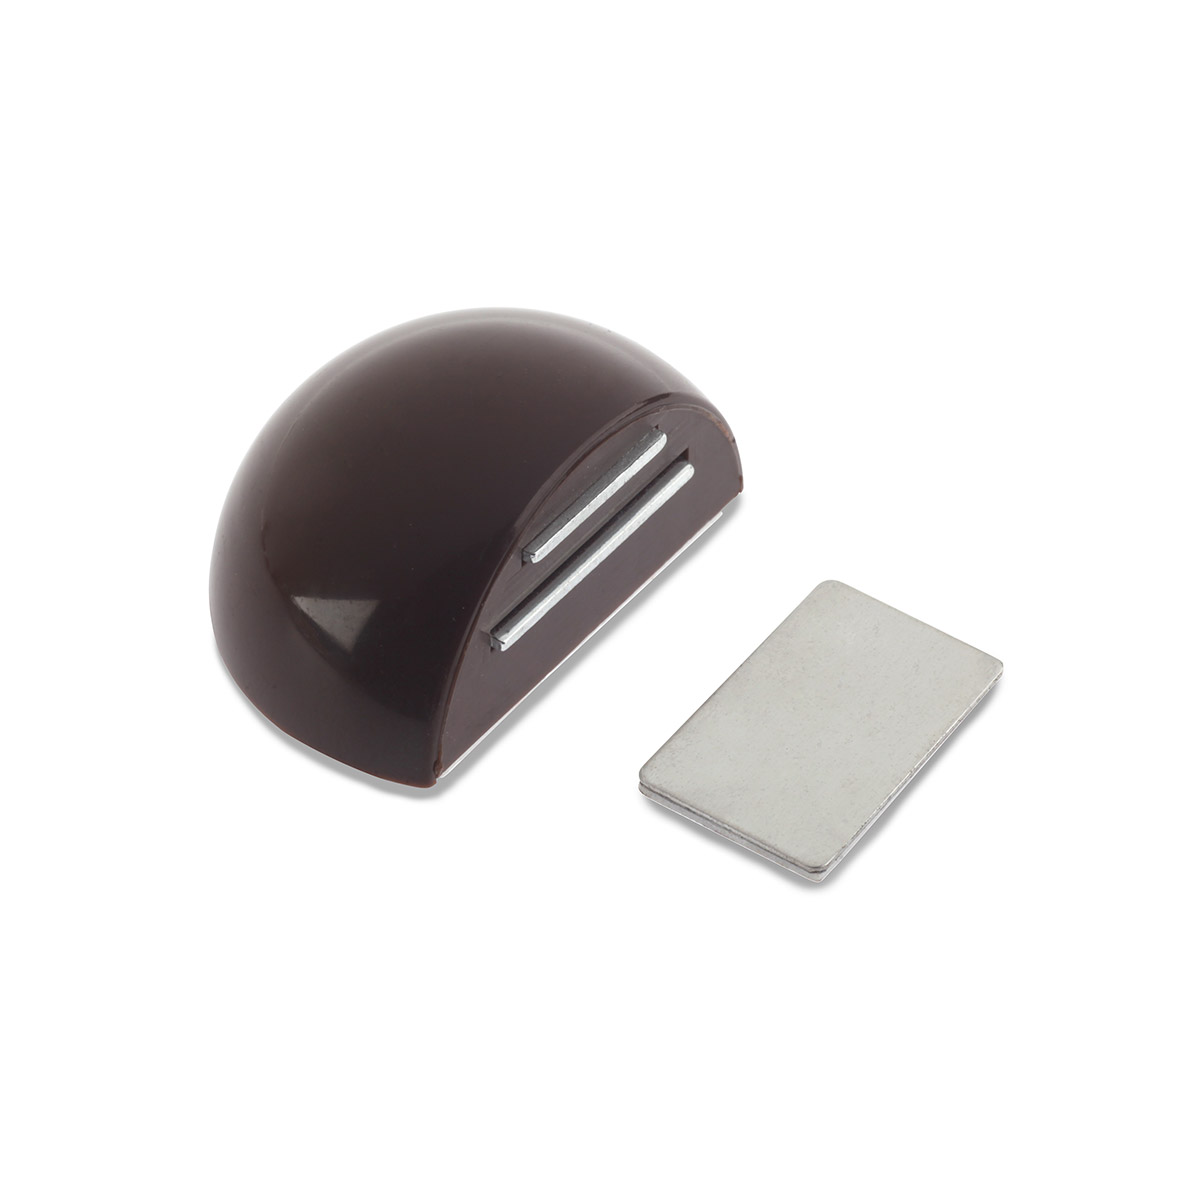 Retenedor de puerta con imán adhesivo con acabado marrón. Dimensiones: 51x39x26 mm